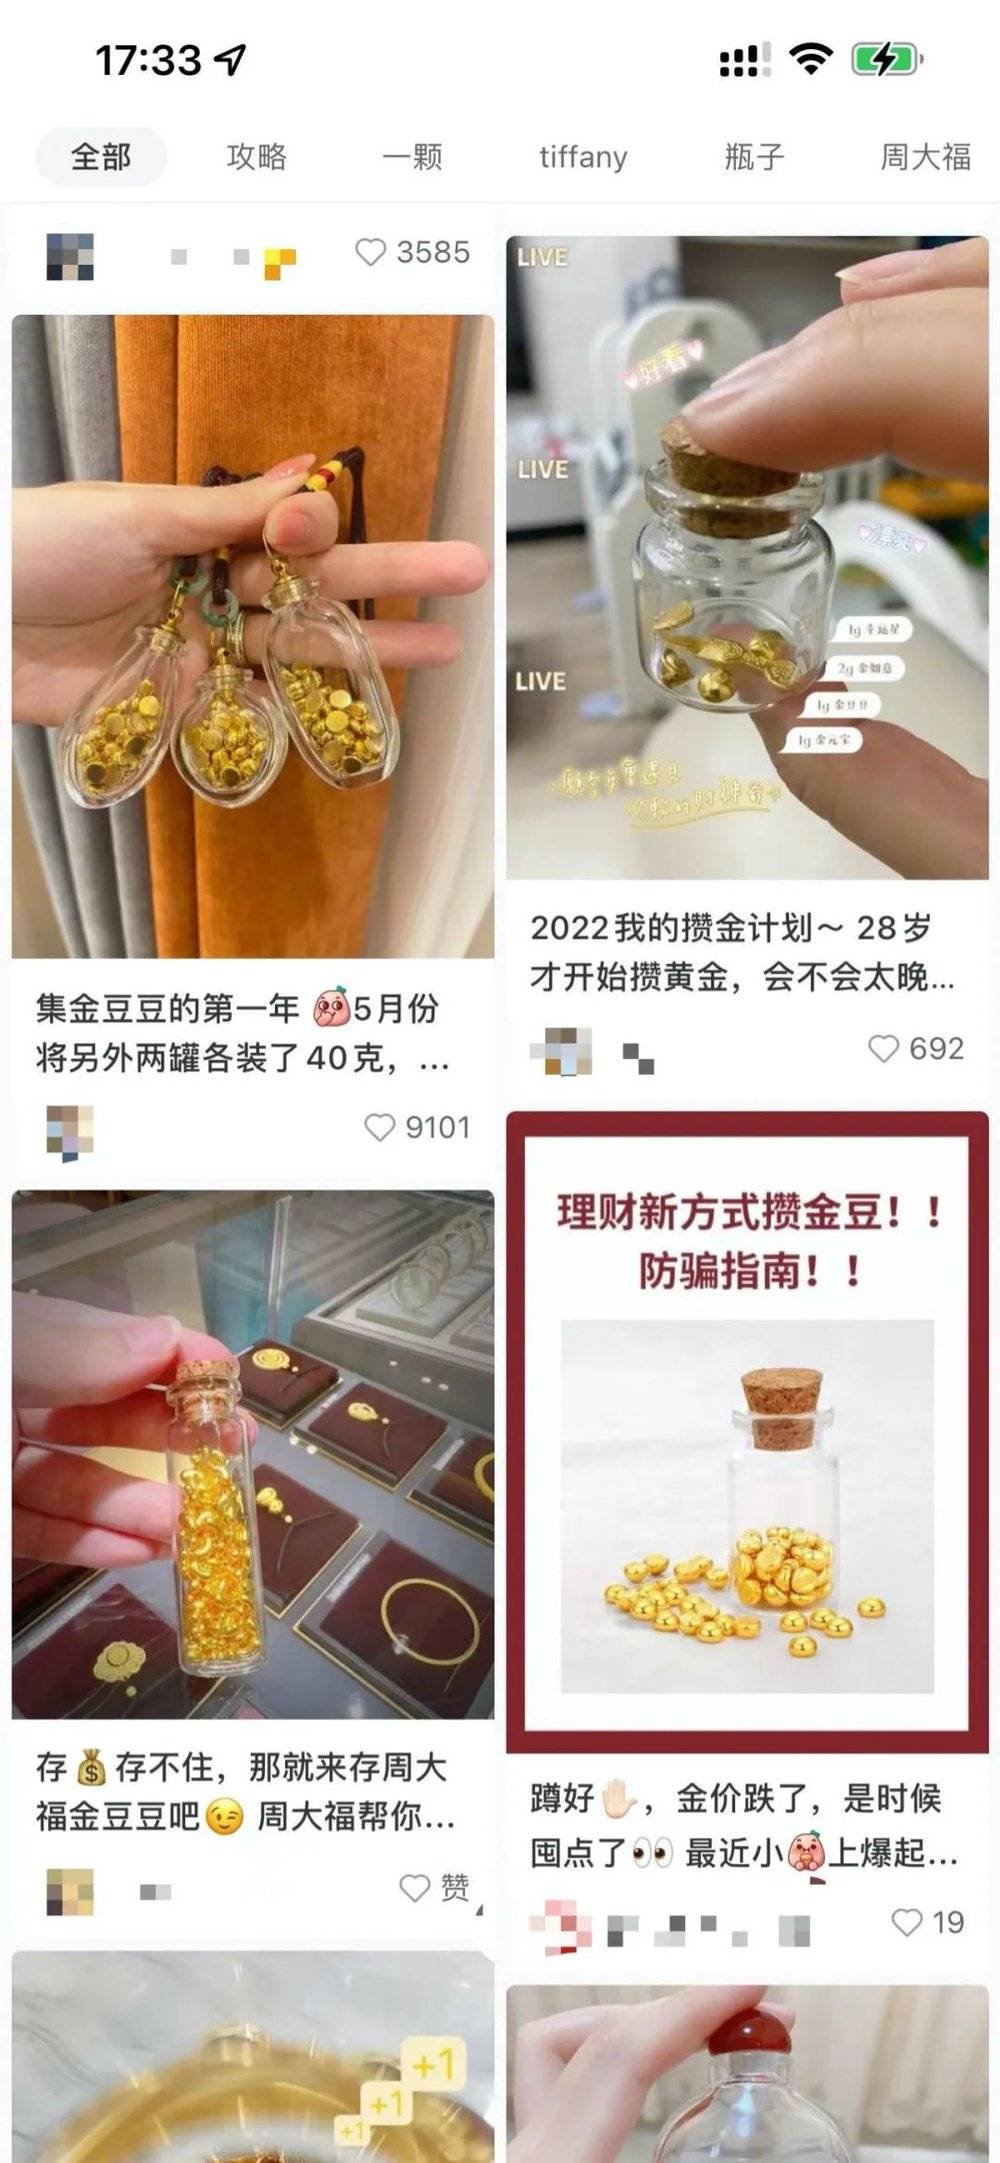 不少网友在社交媒体上分享攒金豆豆的经验。（图源：社交媒体）<br>